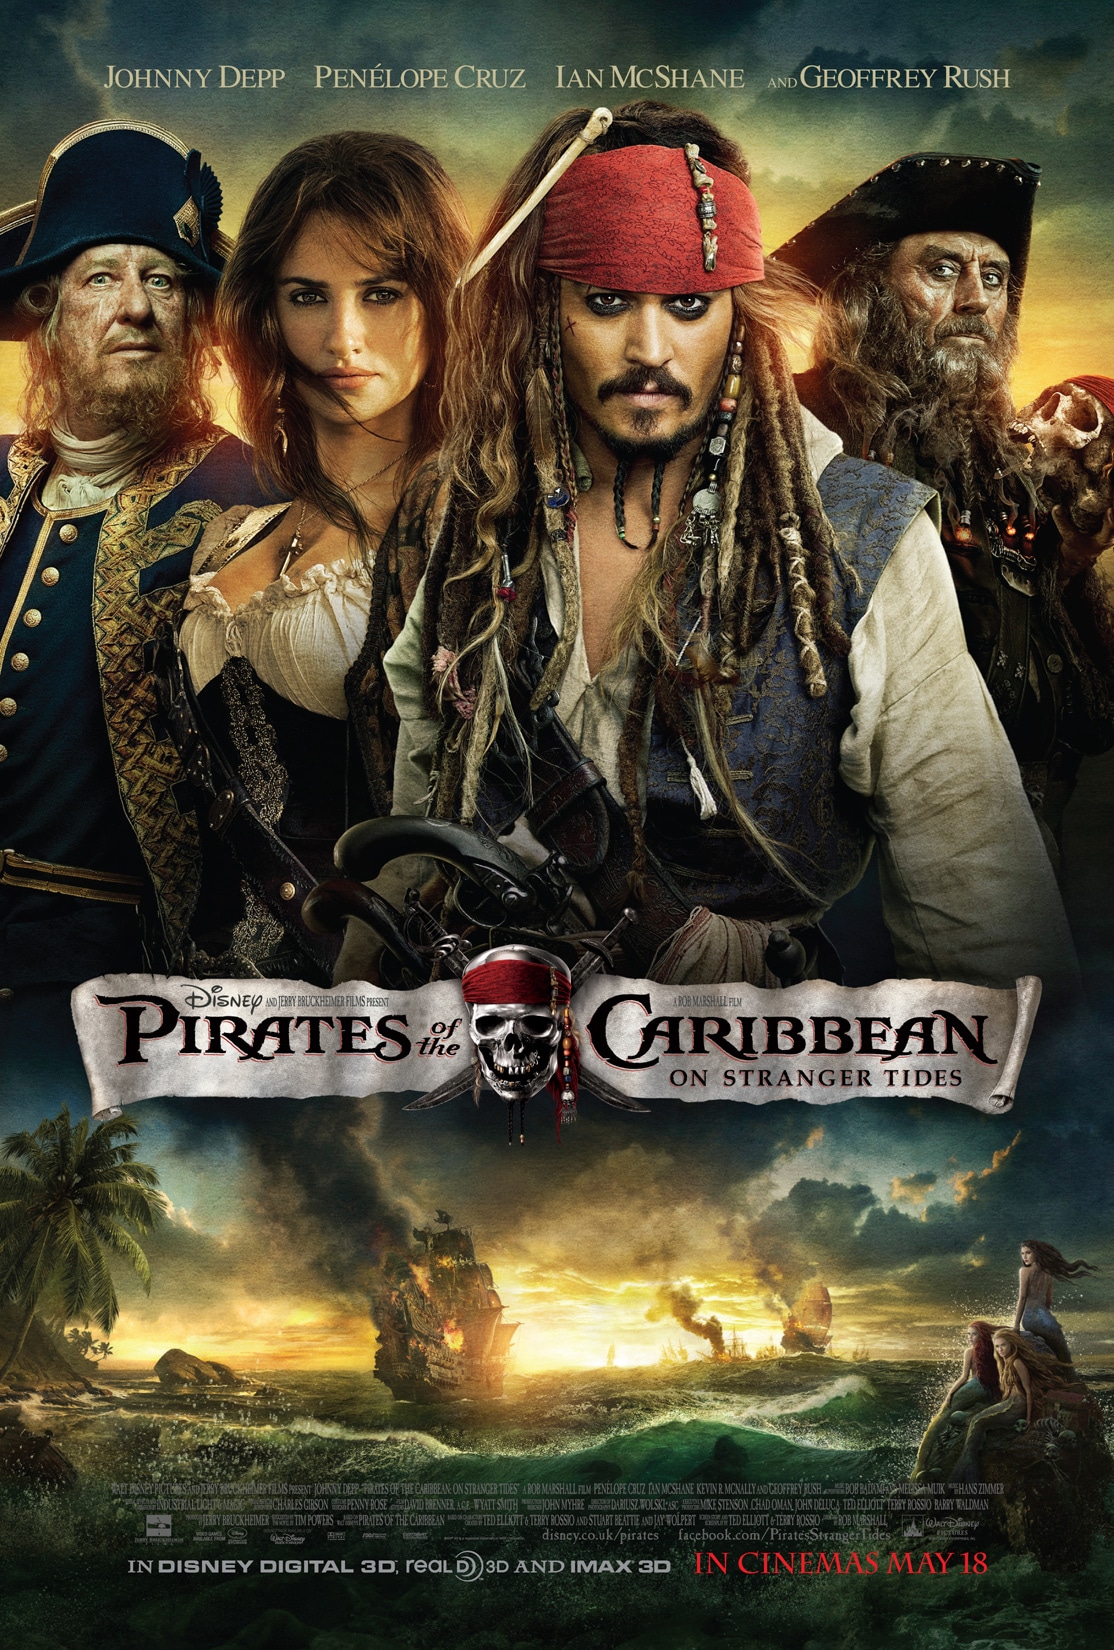 Pirates of the Caribbean: On Stranger Tides - $410.6 million